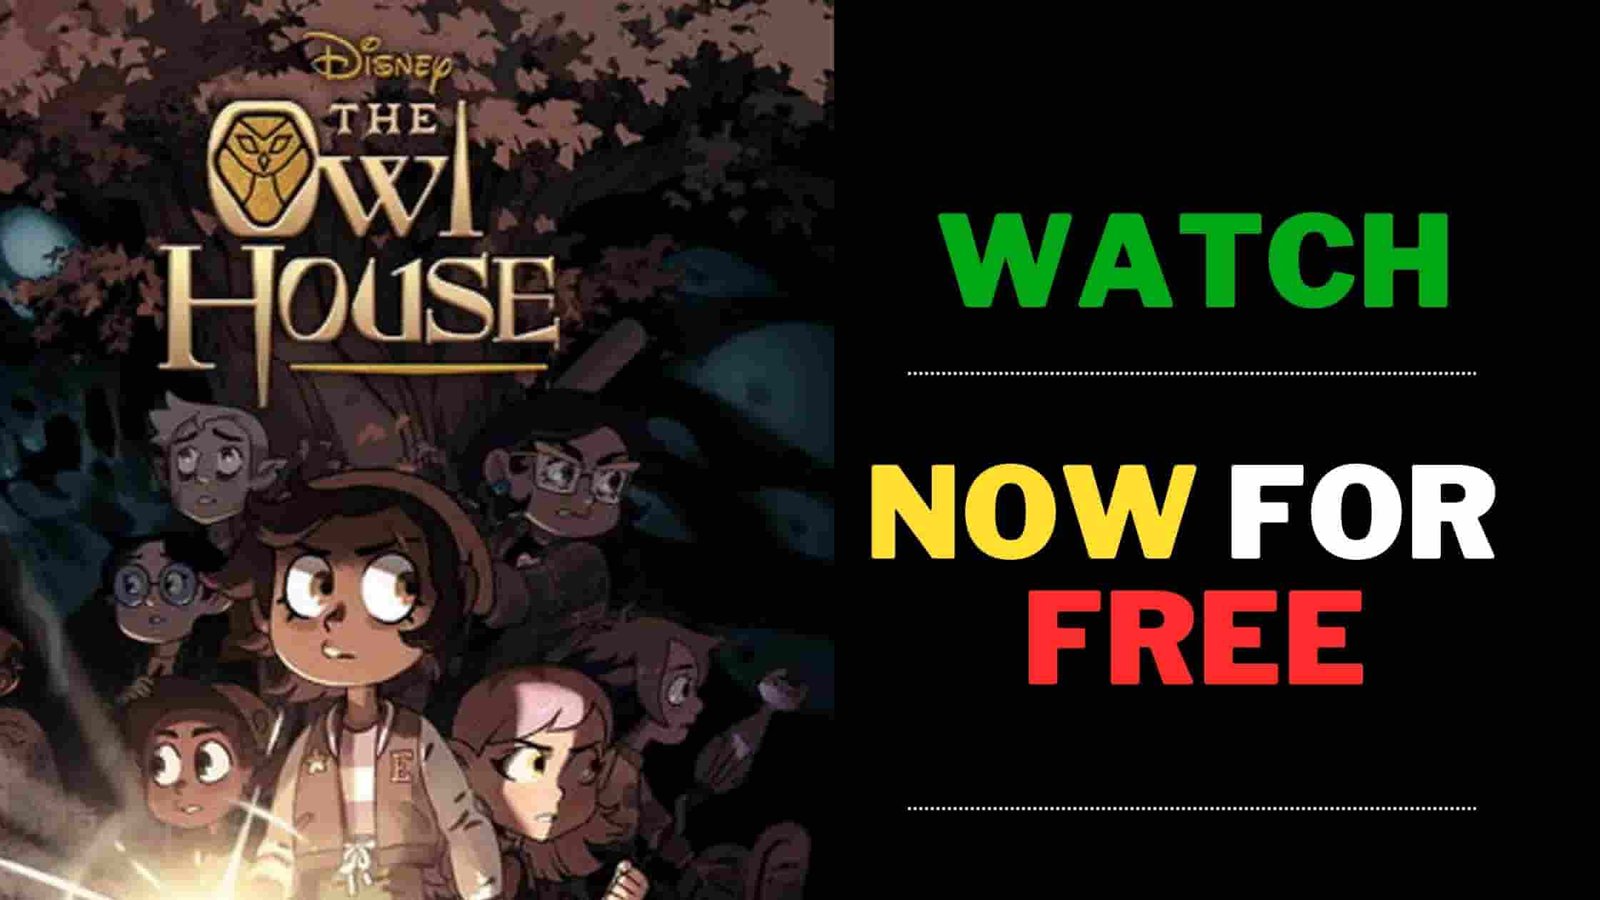 the owl house season 3